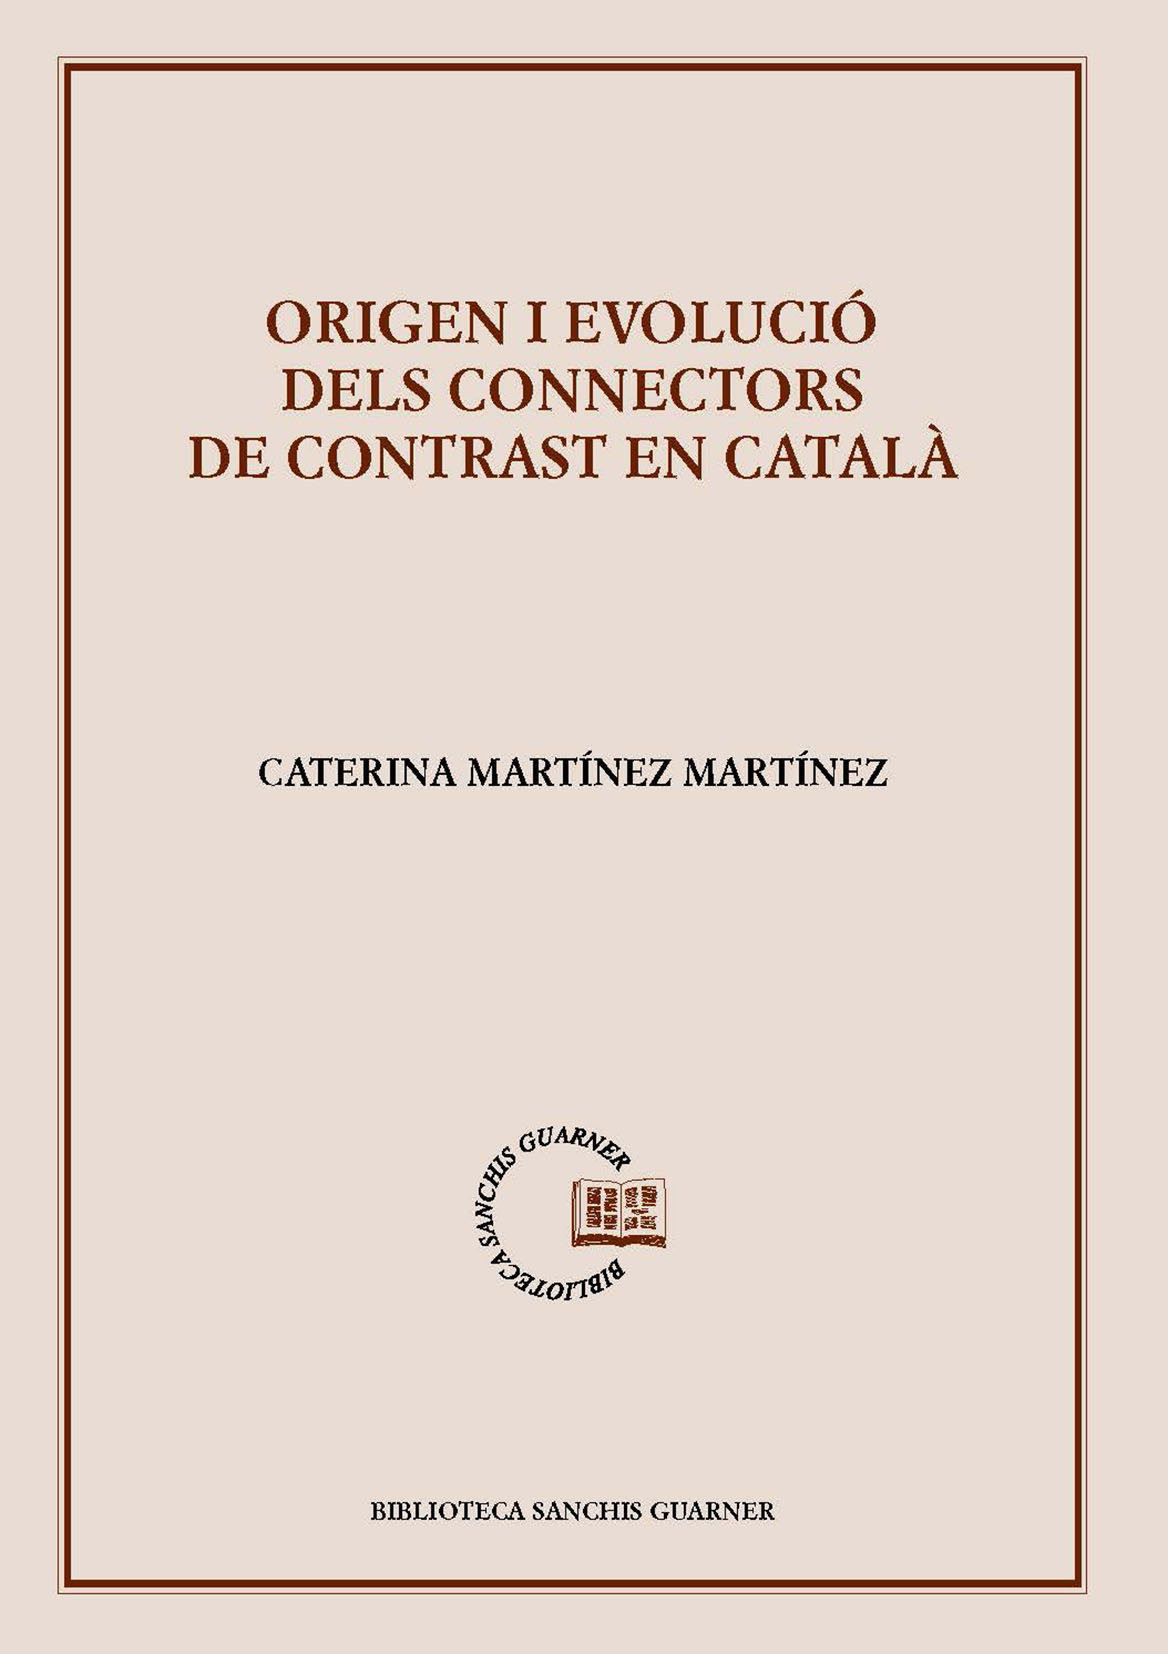 Caterina Martínez Martínez